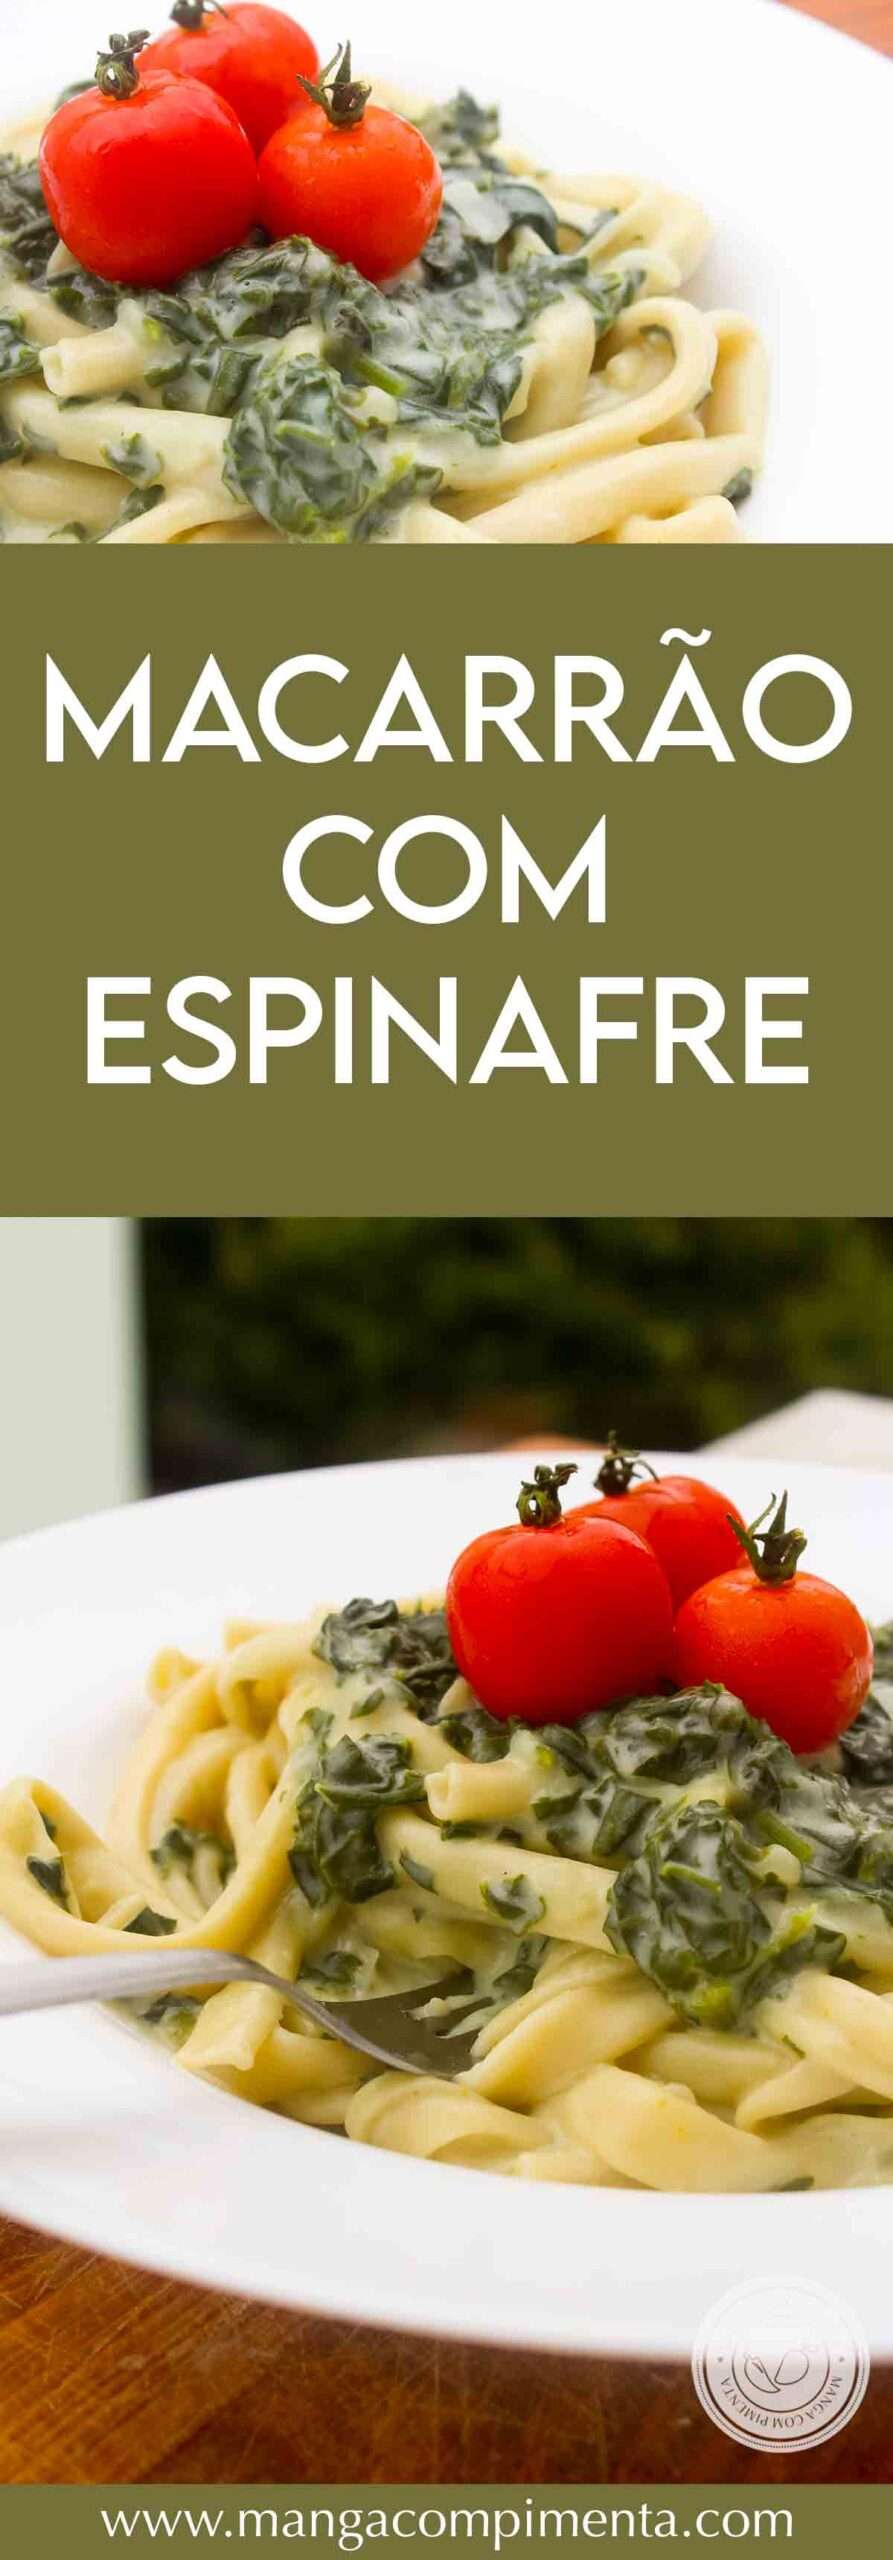 Receita de Macarrão com Espinafre - para um almoço delicioso durante a semana!